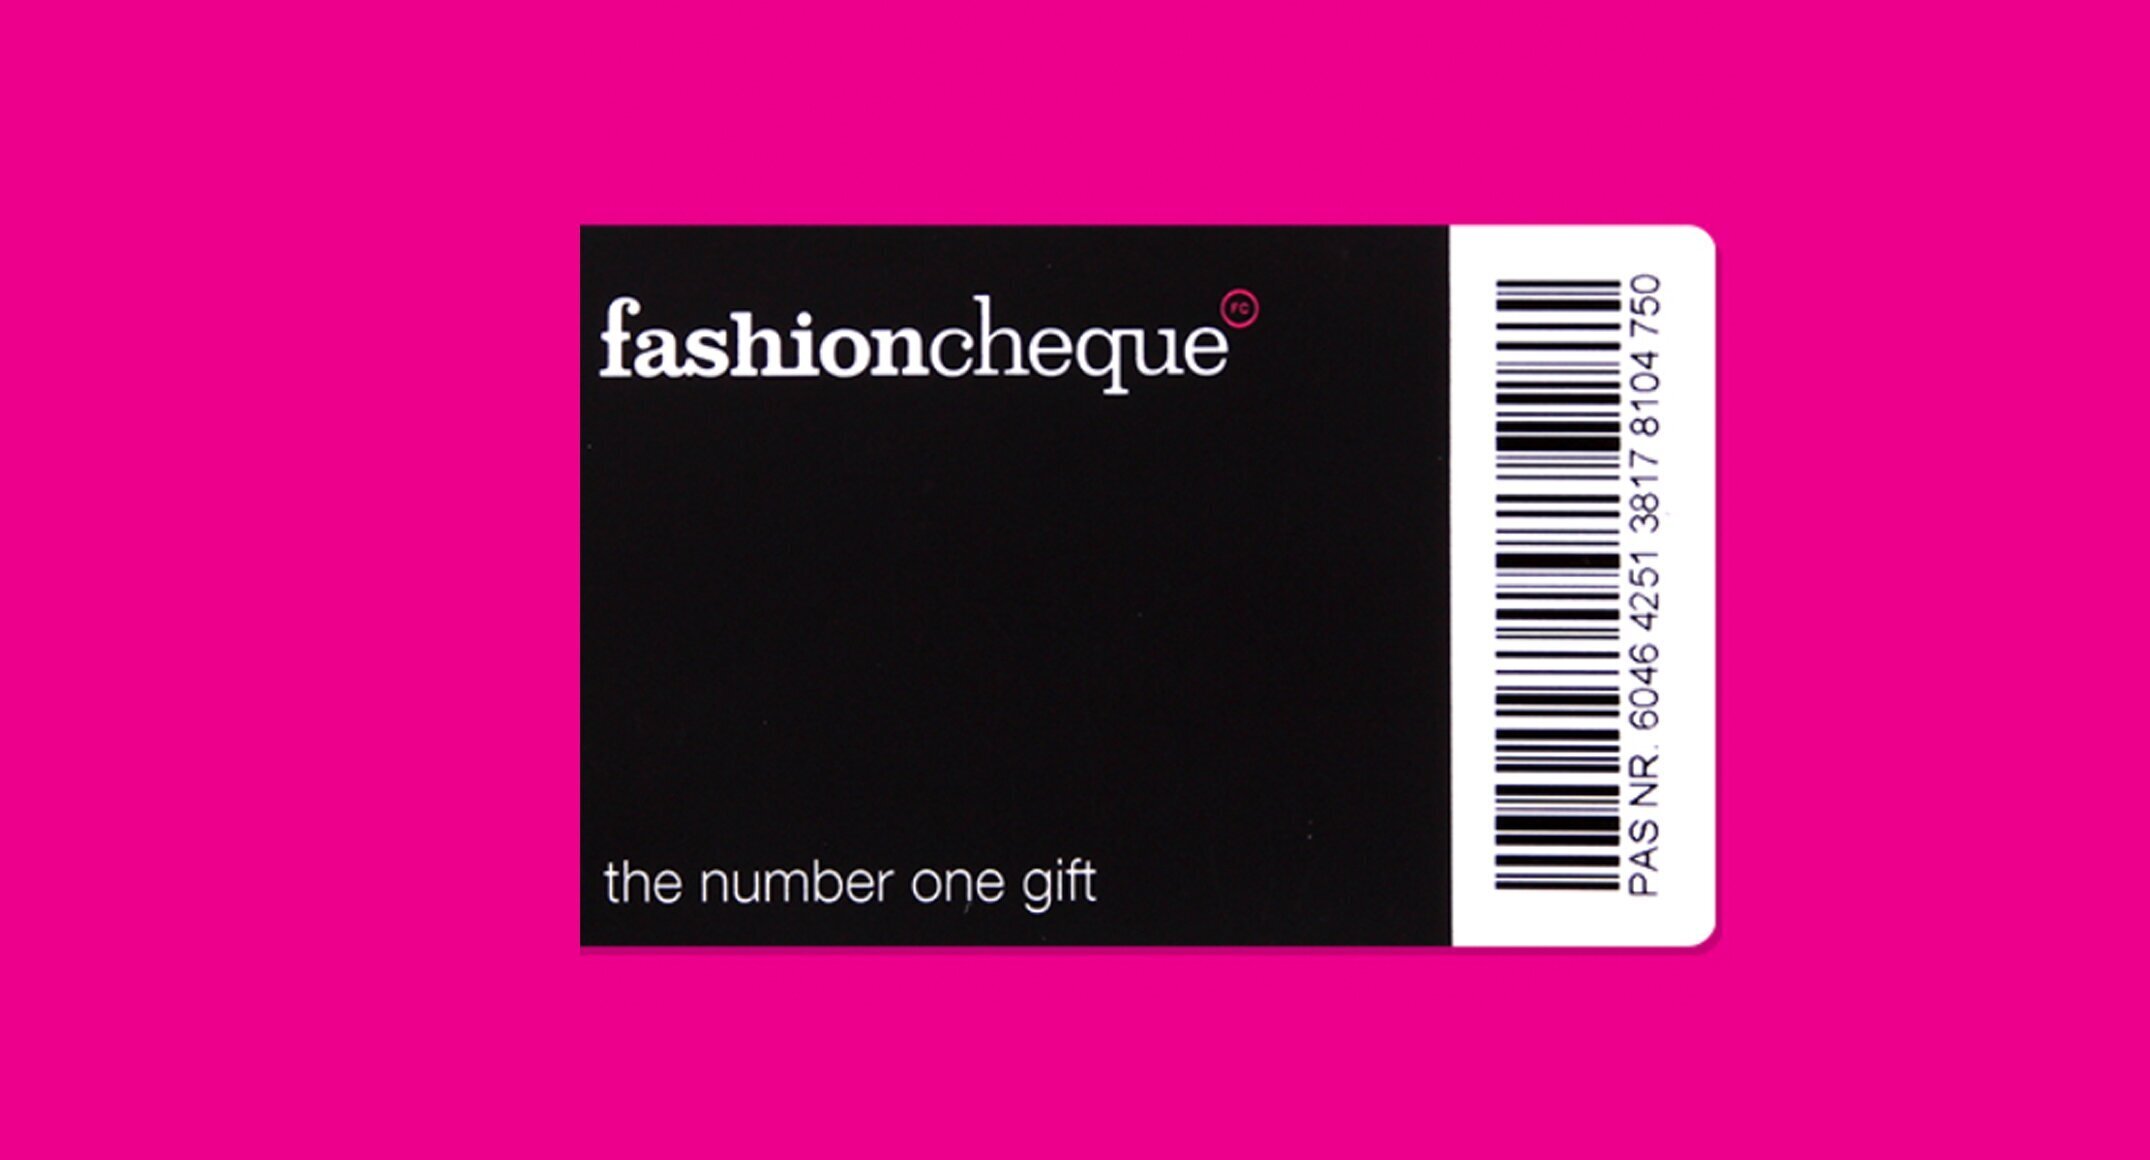 Nationale Postcode Loterij helpt mode, sport en schoenen retail in samenwerking met Fashioncheque